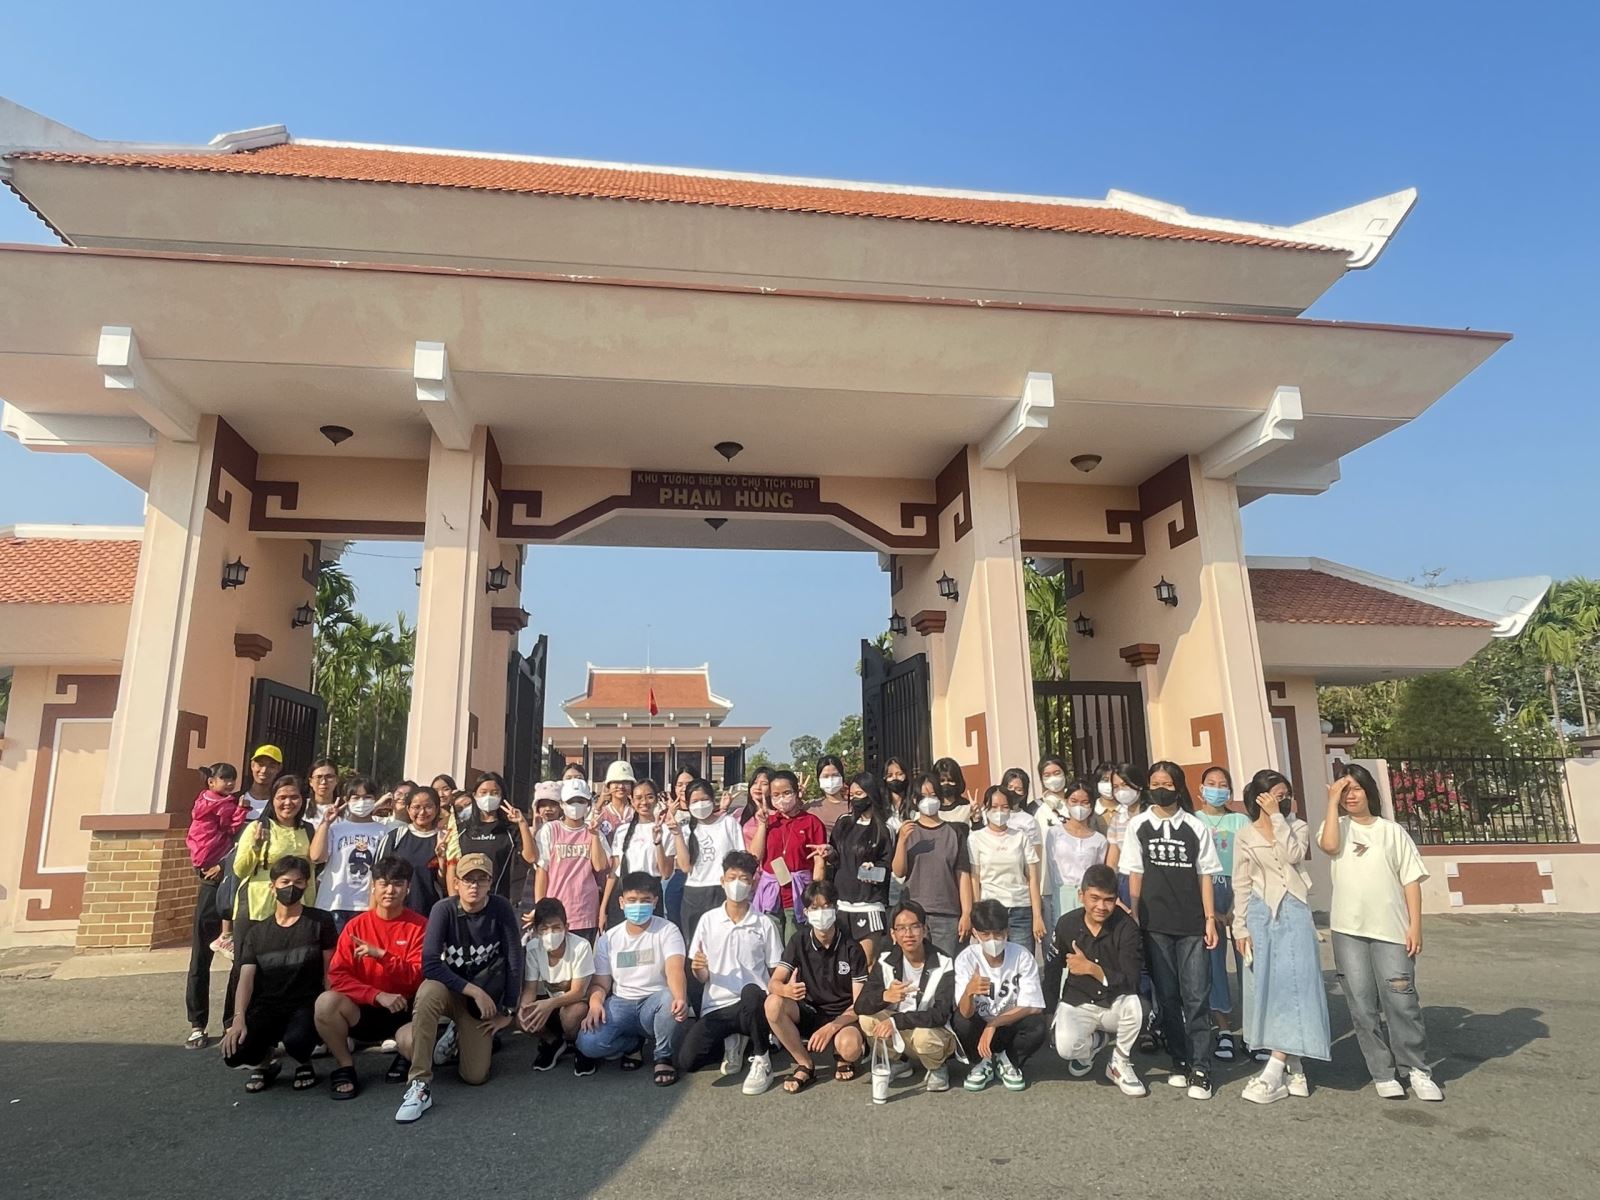 Hoạt động ngoại khóa Đền Phạm Hùng và khu du lịch Vinh Sang tỉnh Vĩnh Long